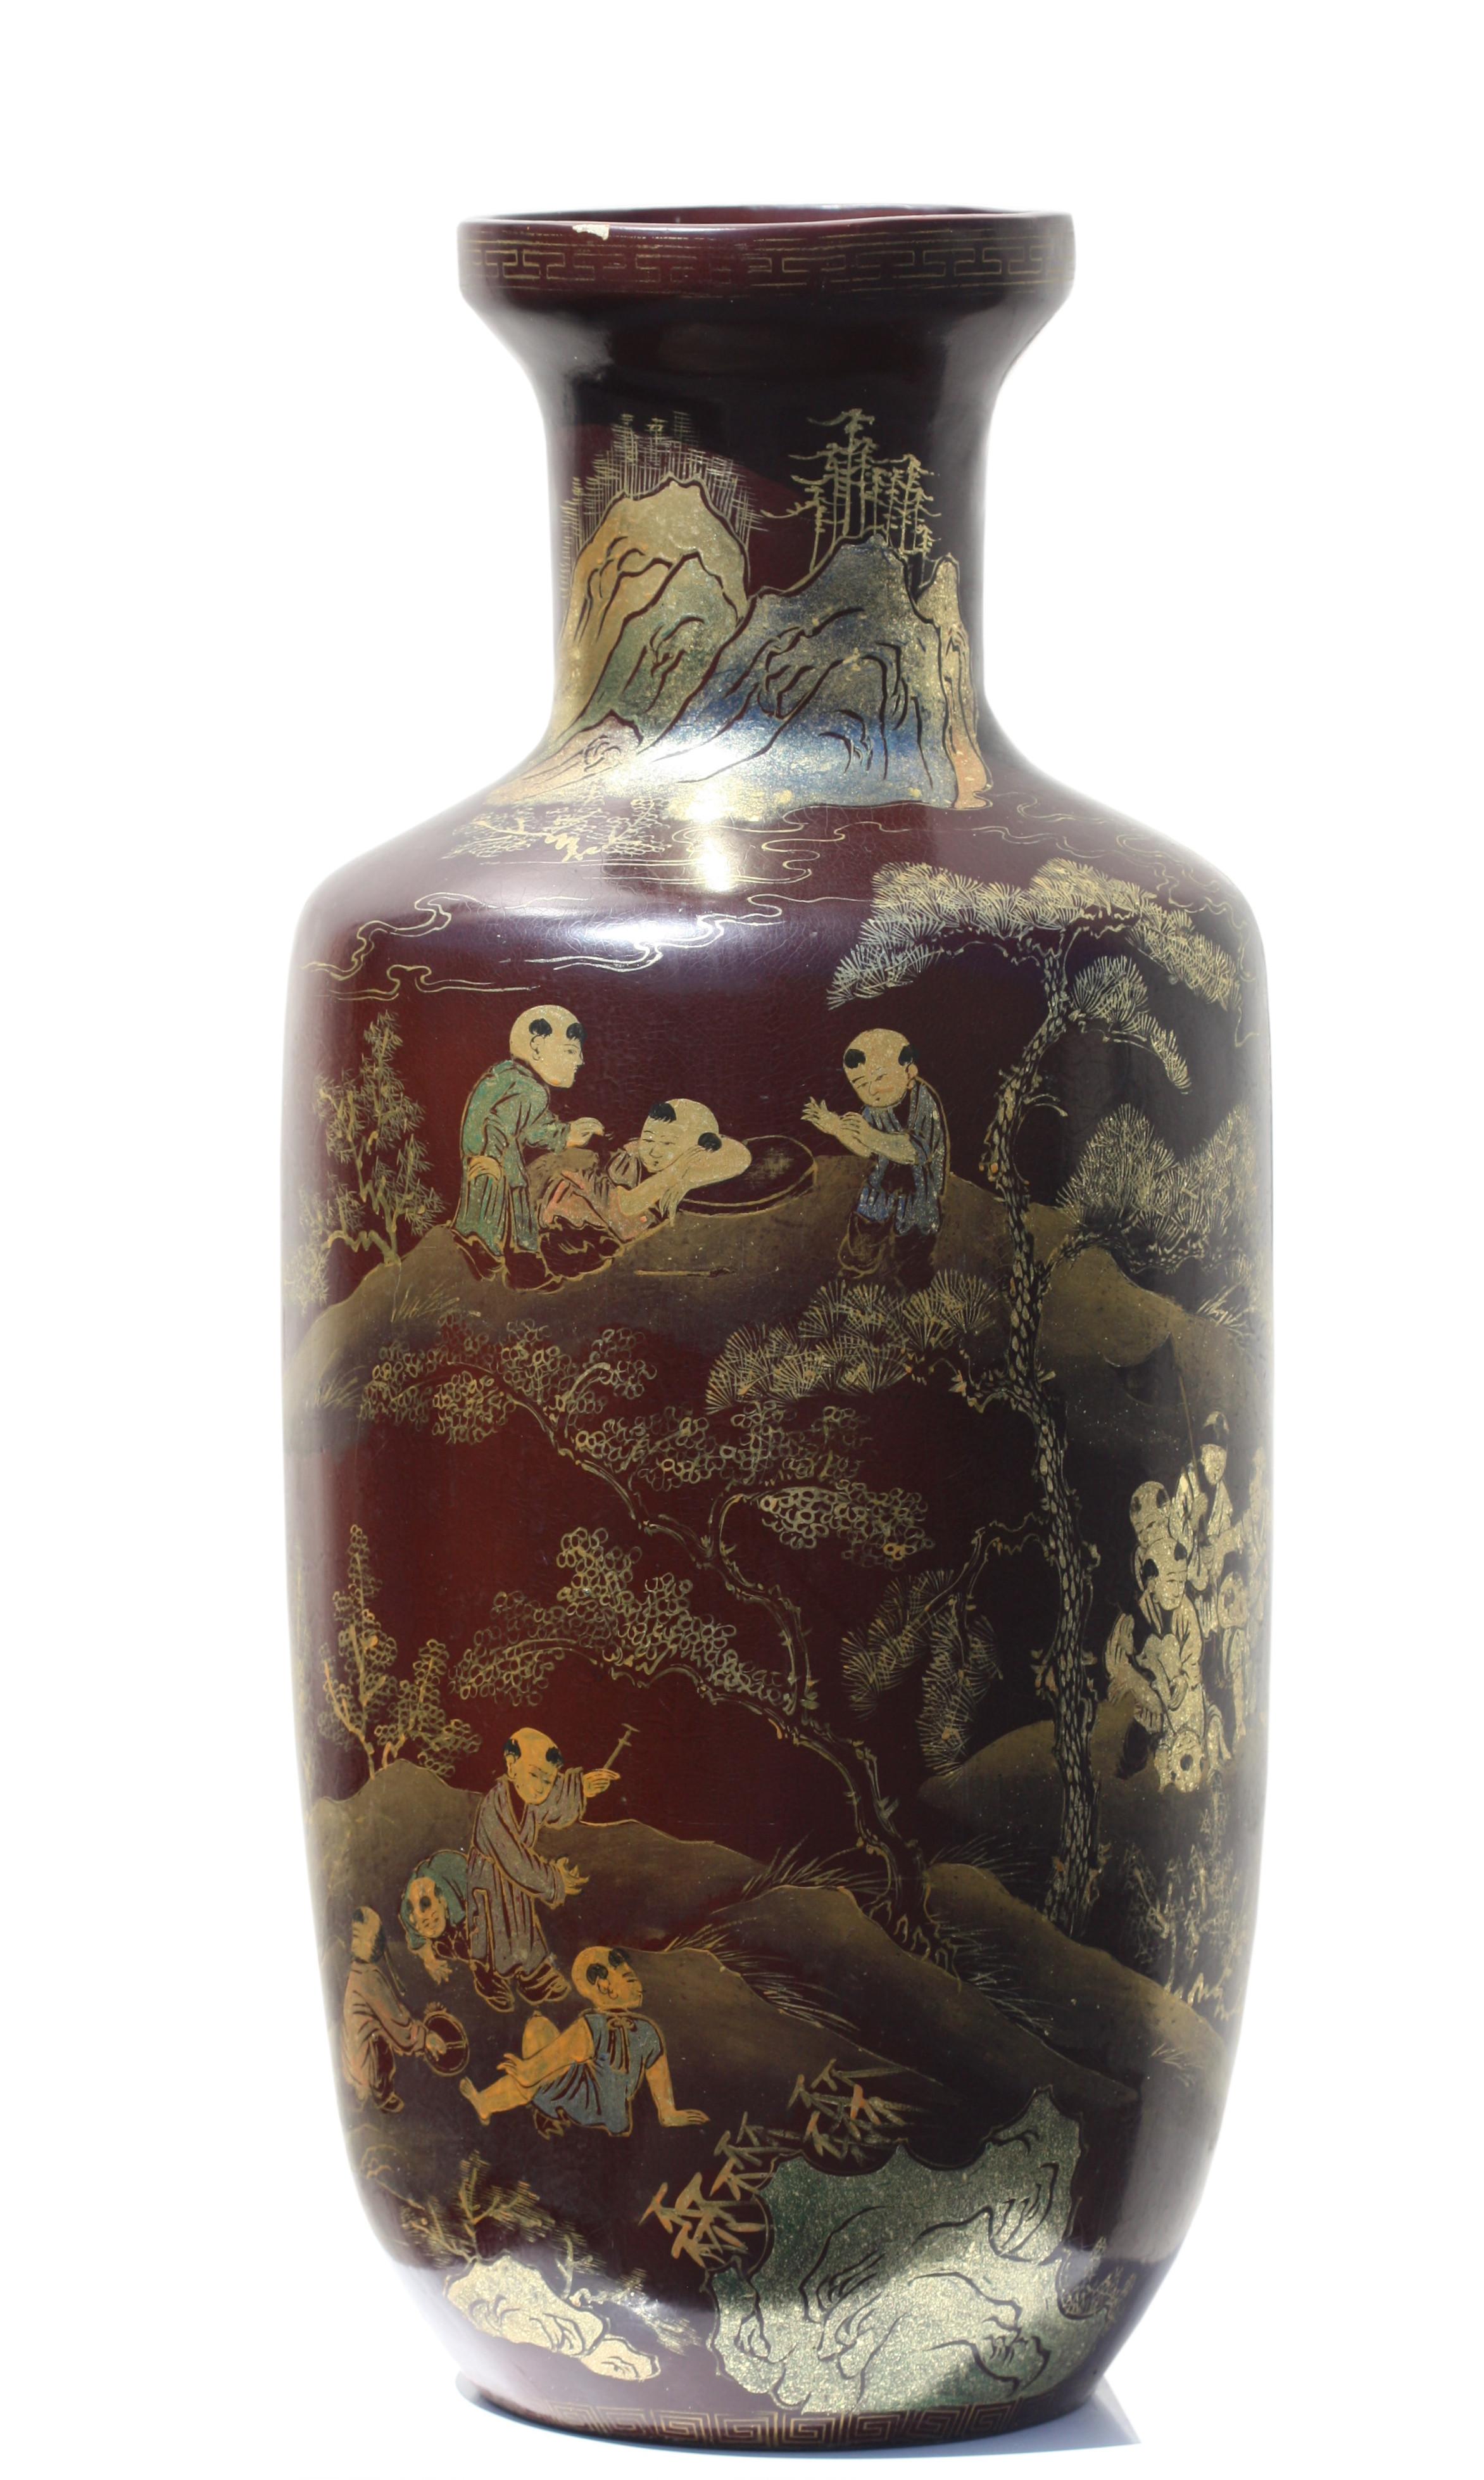 Paire de vases d'exportation chinois en laque noire avec décor doré.
L'ensemble est décoré de figures, d'arbres et de caractères chinois. 
Hauteur 23 po (58,42 cm) 
Diamètre 25,4 cm (10 in.) 
Propriété d'un collectionneur privé de Californie.
Cette